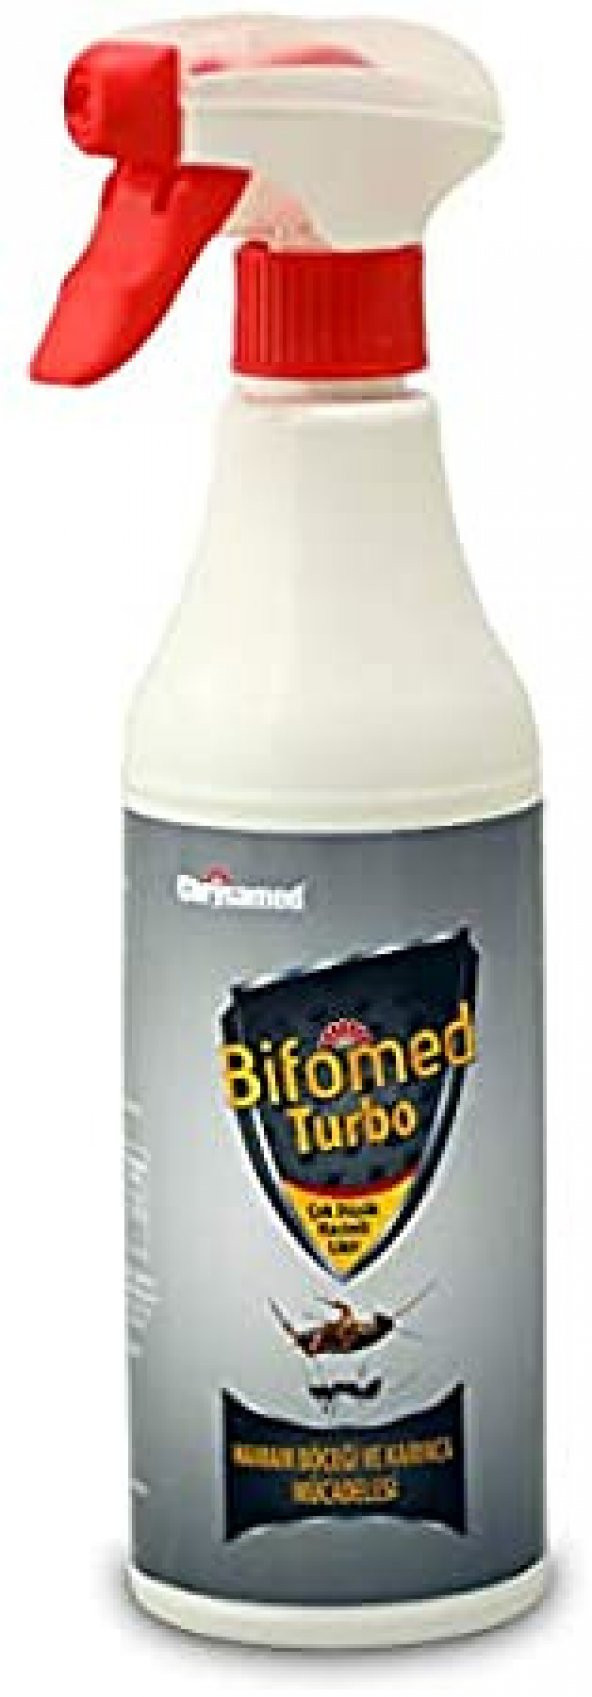 Chrysamed Bifomed Turbo 500 ml